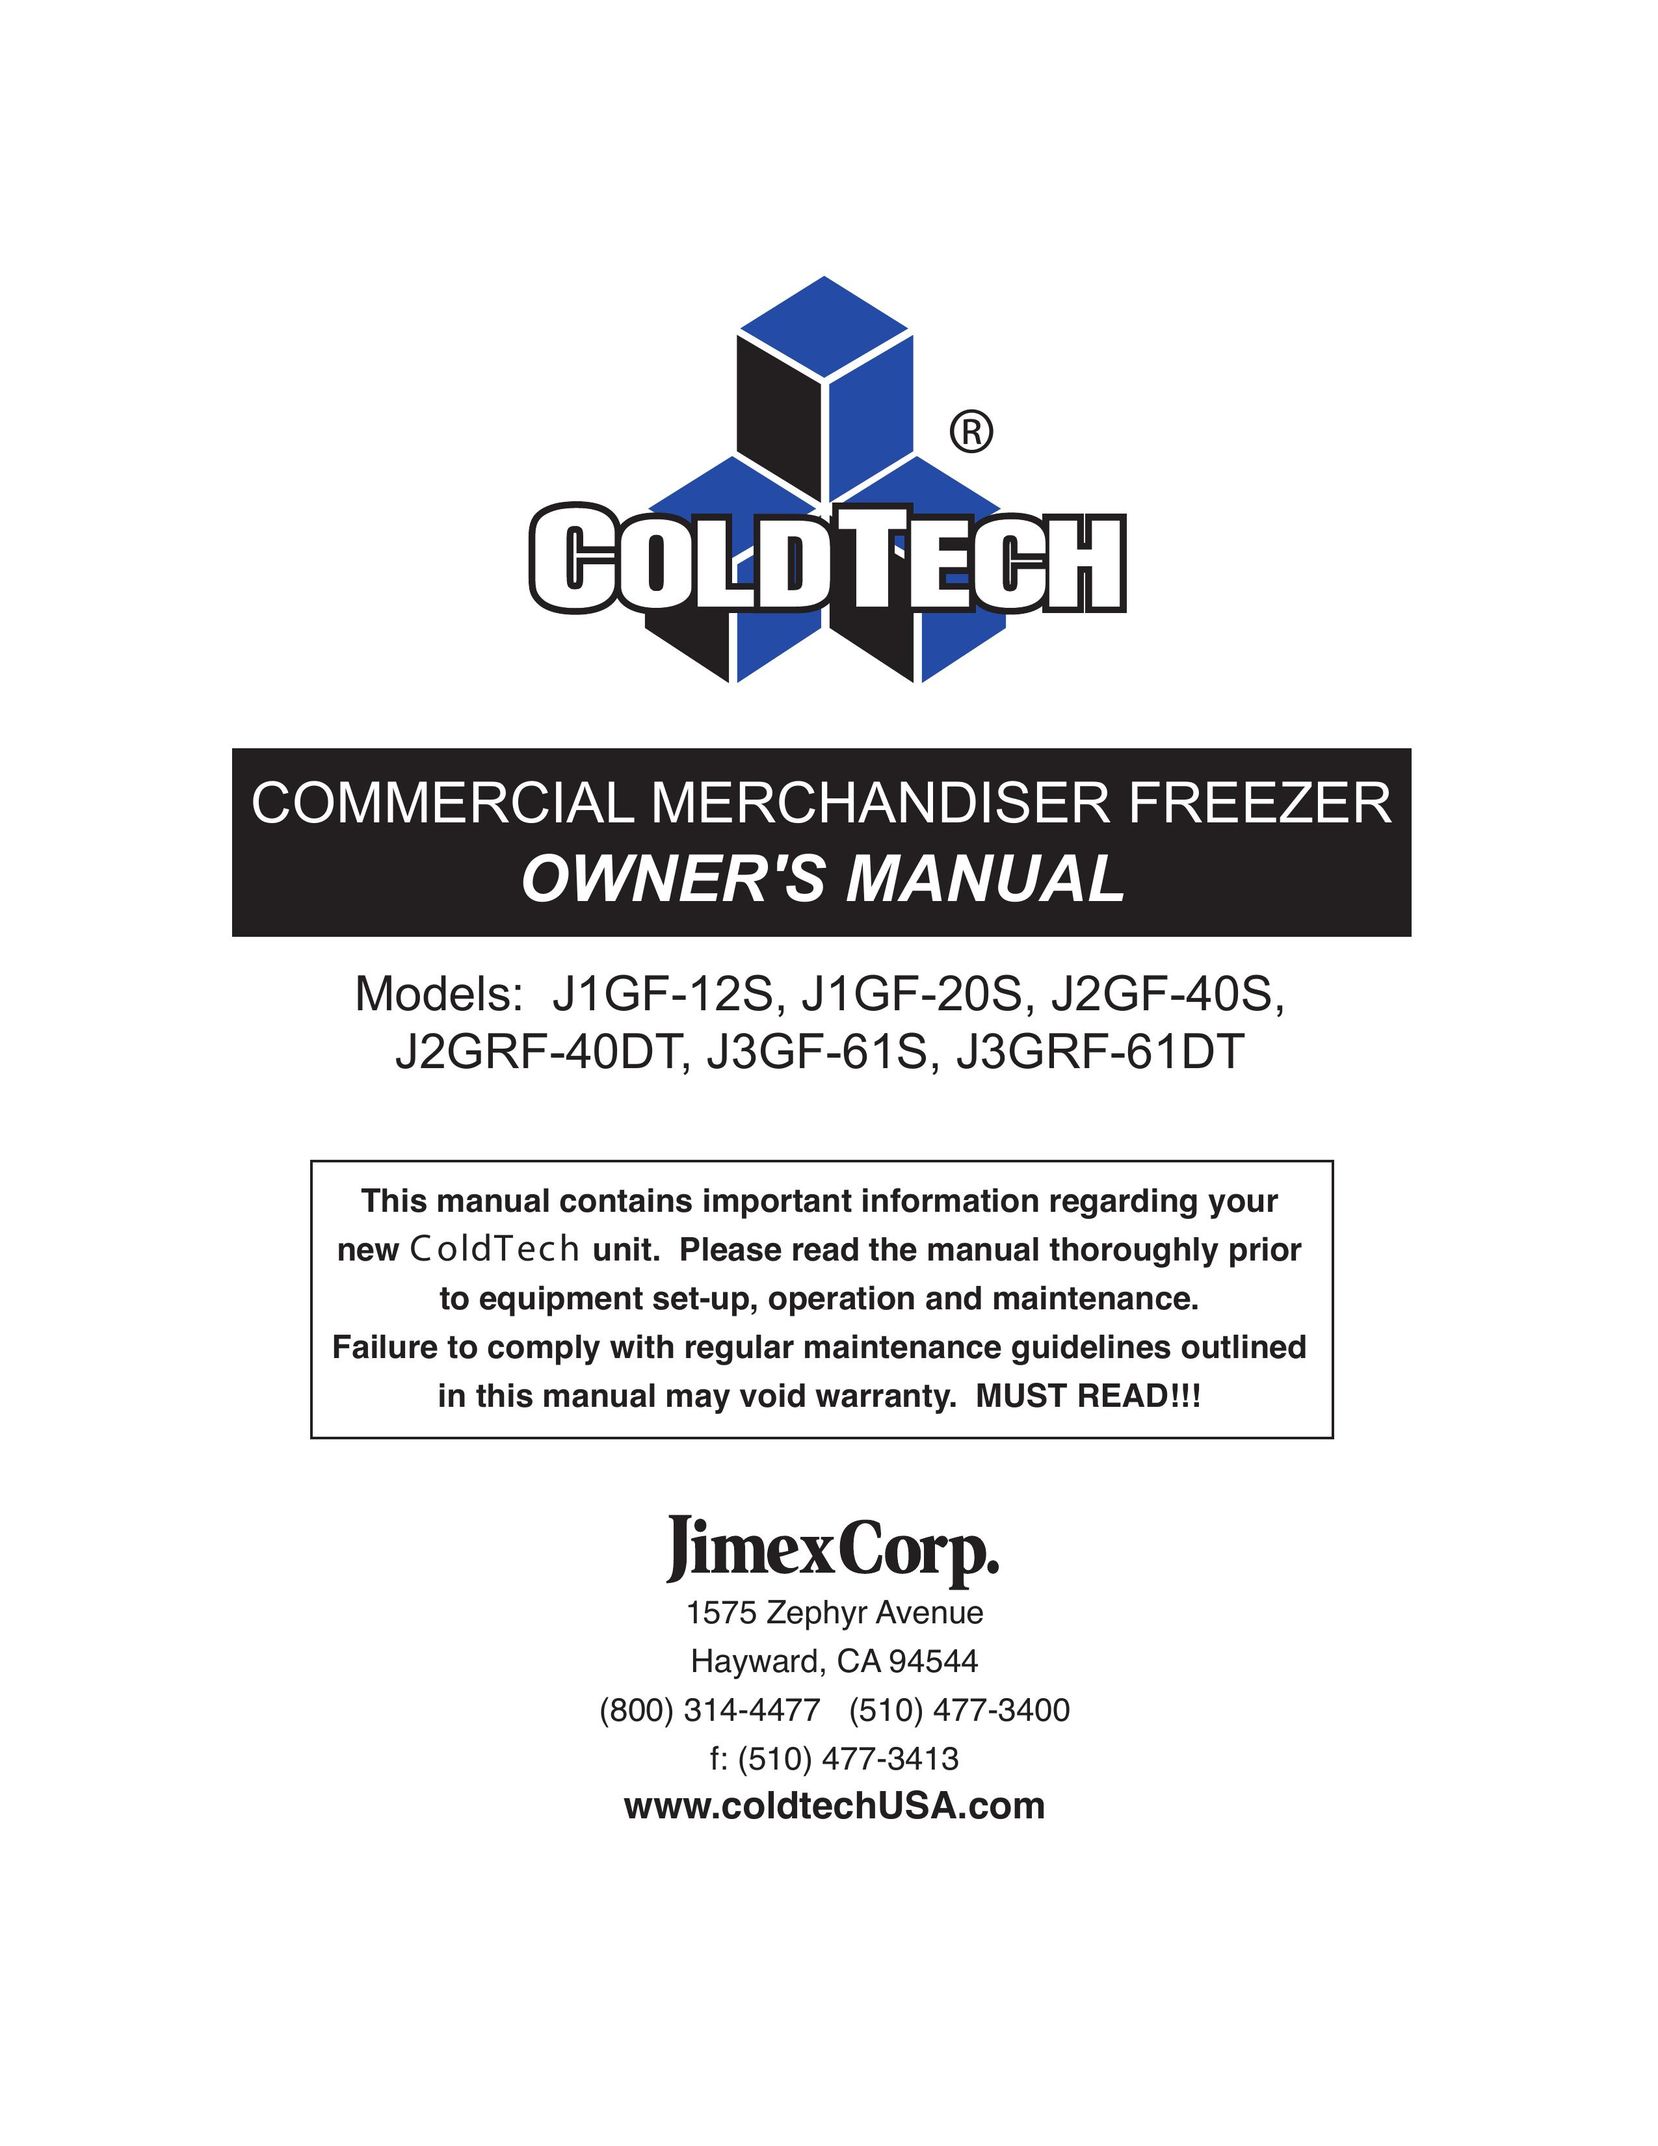 ColdTech J2GRF-40DT Freezer User Manual